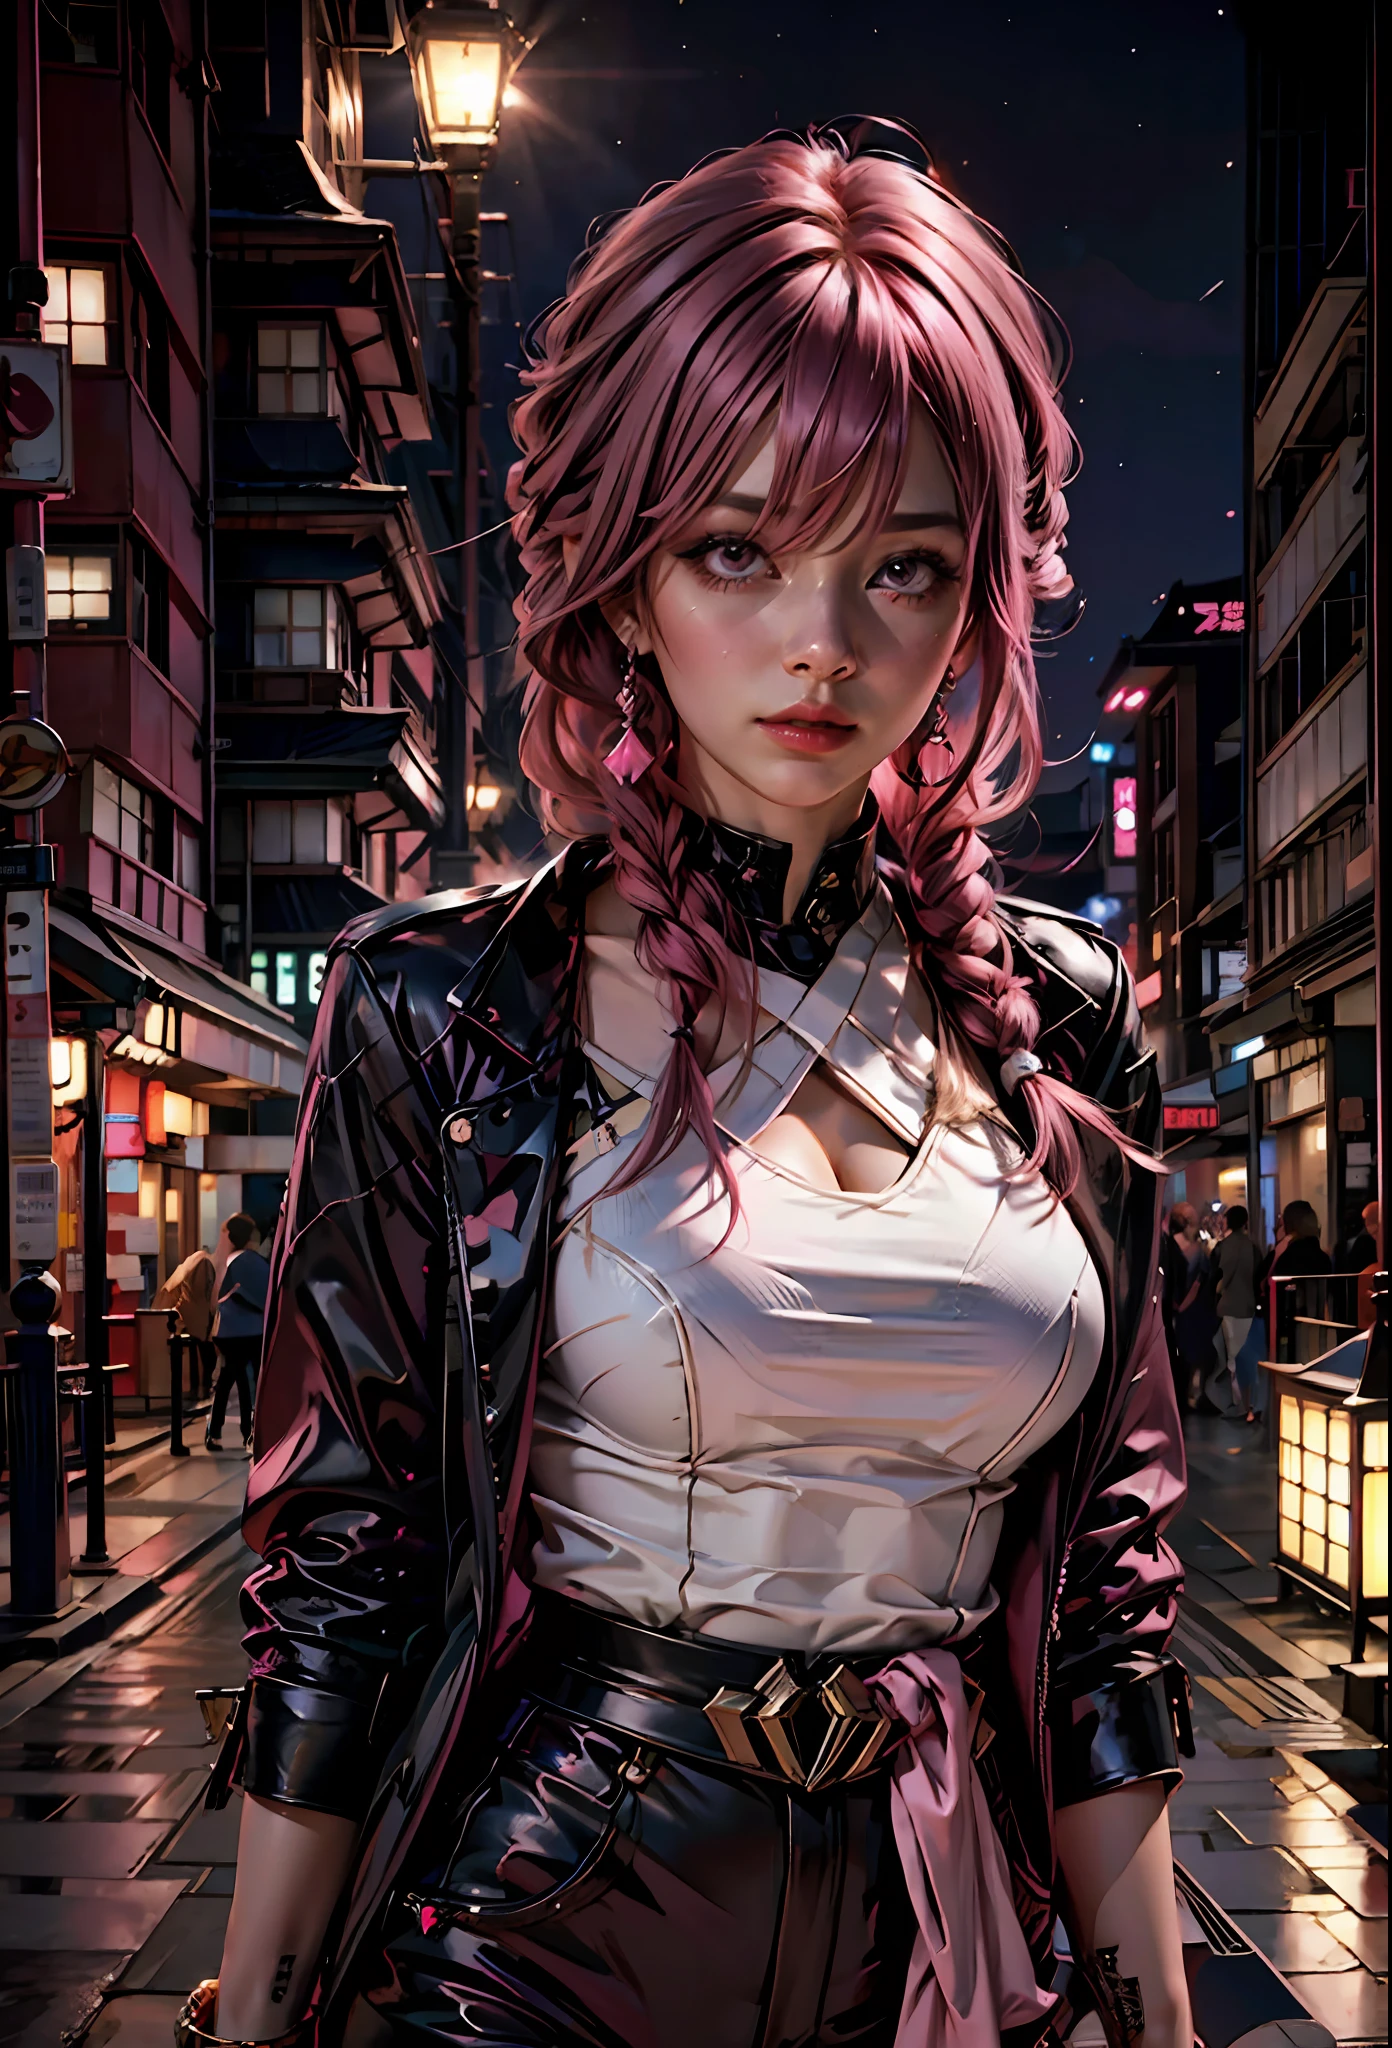 粉紅色頭髮的性感女孩, 粉紅色的眼睛 , 暴露的衣服, 在夜晚的日本城市背景中,蘭博基尼旁邊